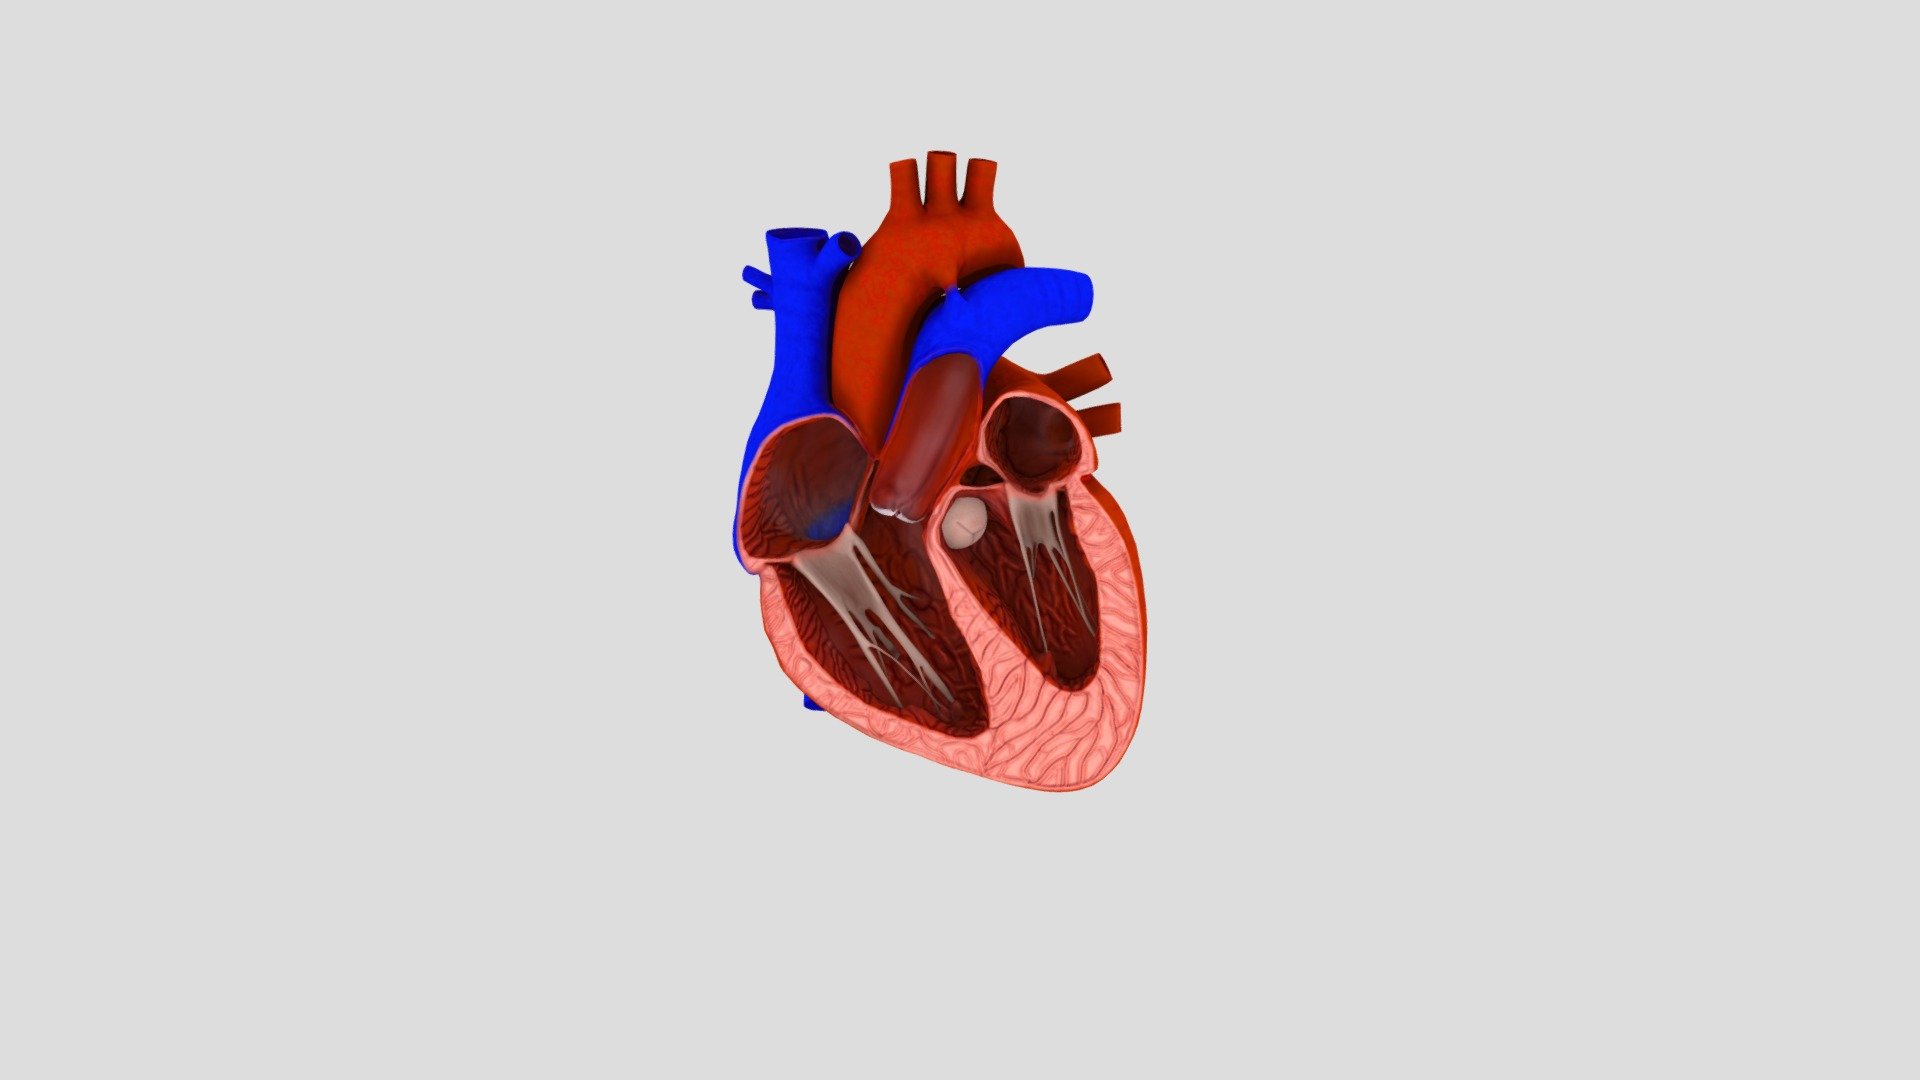 Сердце 3 д пинетерс.